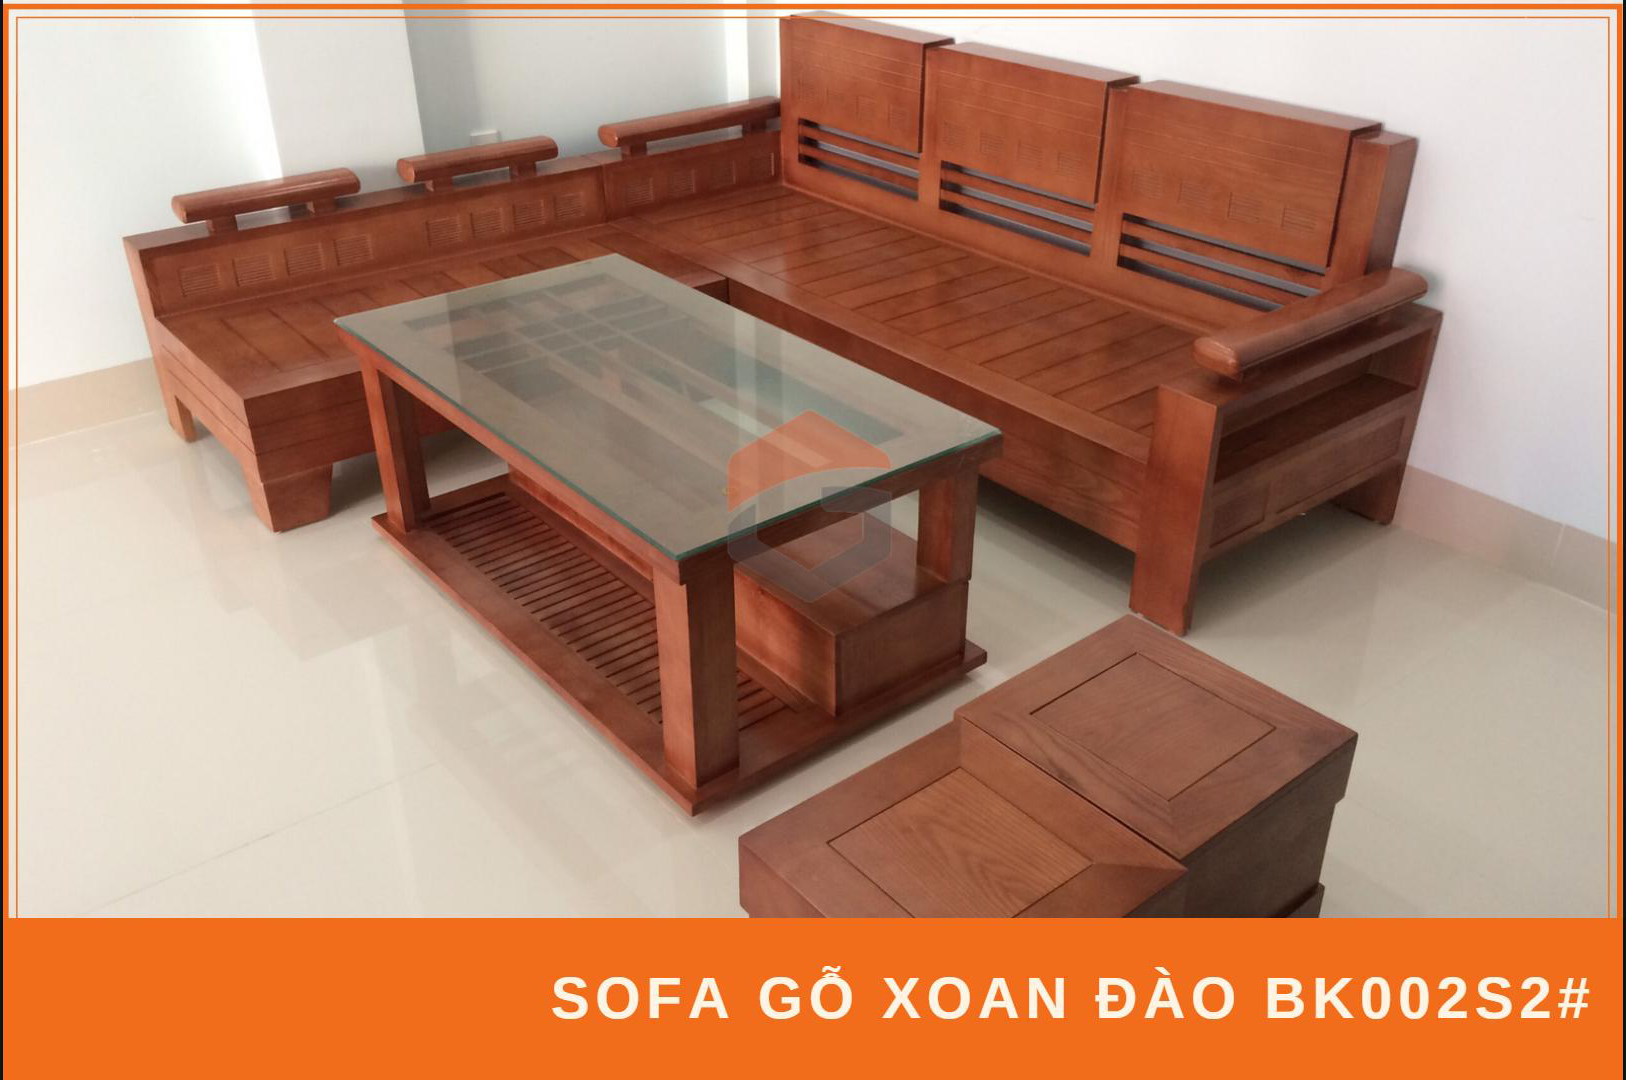 Năm 2024, chúng tôi xin giới thiệu bộ bàn ghế gỗ phòng khách gia đình hiện đại nhất. Chất liệu vải mềm mịn, thiết kế đẹp mắt và tính năng đa dạng, chúng tôi tin rằng bộ bàn ghế này sẽ đáp ứng được mọi nhu cầu của gia đình bạn. Hãy lựa chọn sản phẩm tốt nhất cho gia đình của bạn.